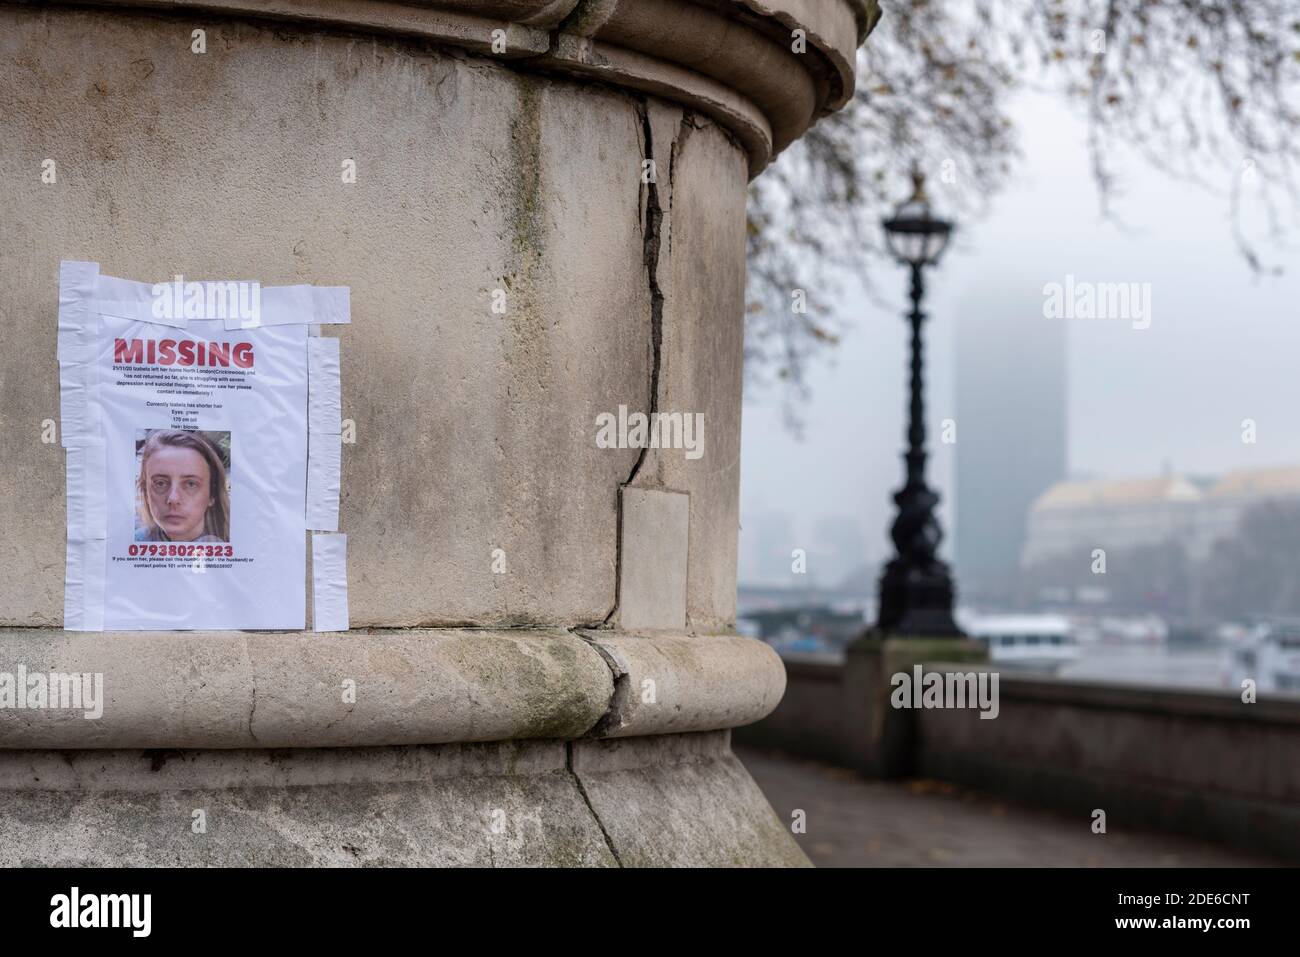 Affiche manquante pour une femme perdue à Londres lors d'une sombre journée faragueuse à Londres, au Royaume-Uni. Personne souffrant de dépression et de pensées suicidaires. Ville brumeuse Banque D'Images